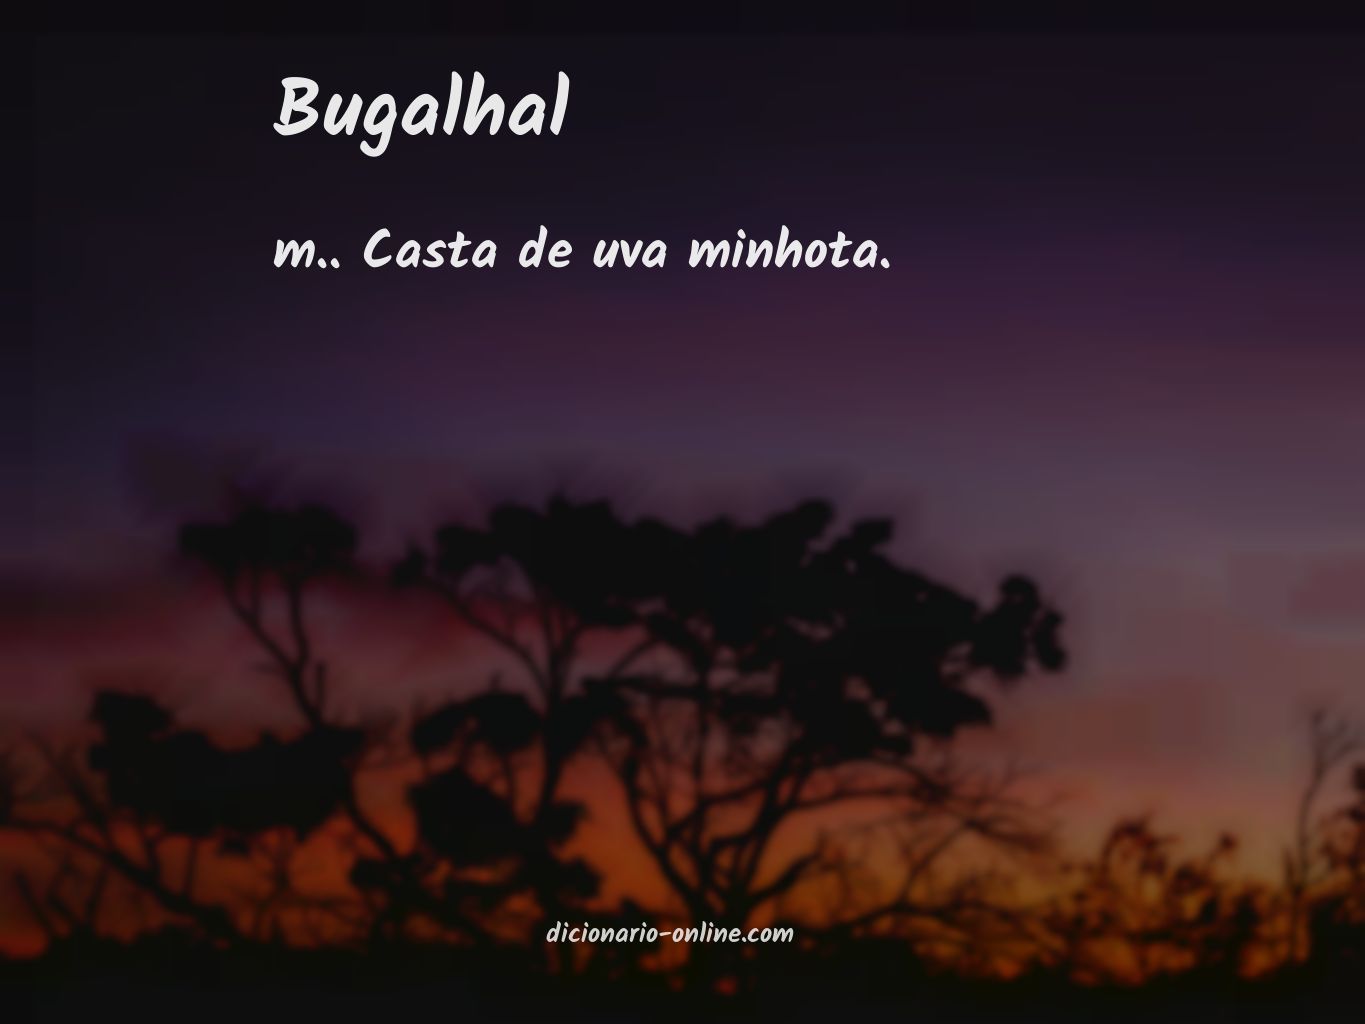 Significado de bugalhal